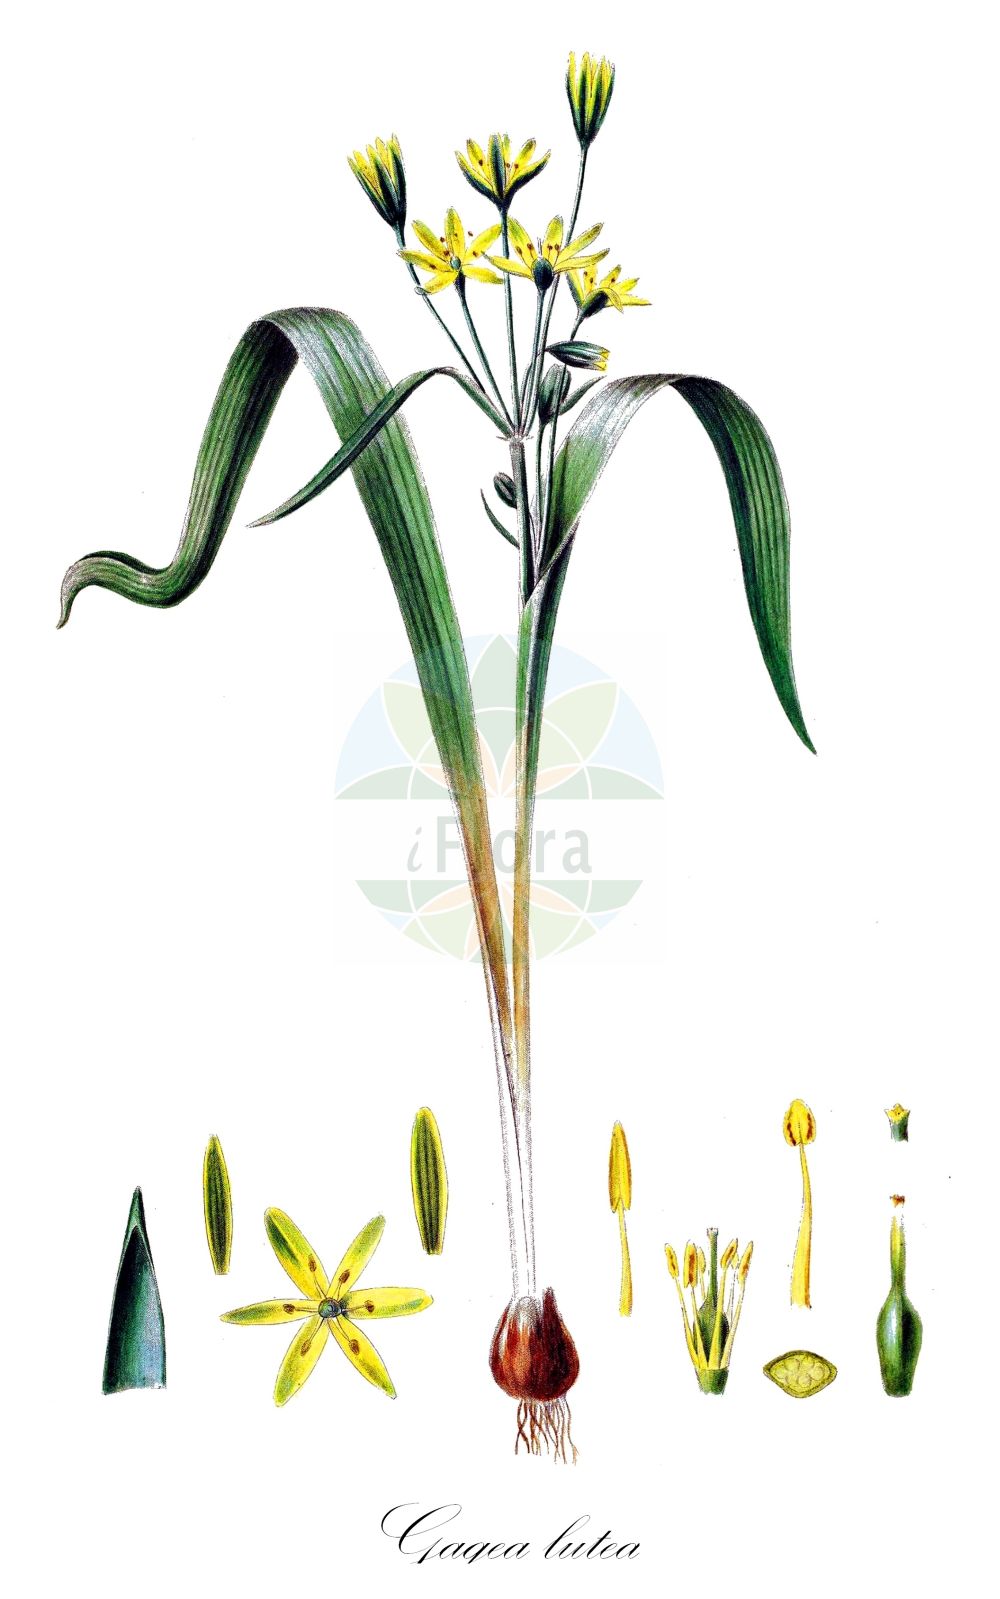 Historische Abbildung von Gagea lutea (Wald-Gelbstern - Yellow Star-of-Bethlehem). Das Bild zeigt Blatt, Bluete, Frucht und Same. ---- Historical Drawing of Gagea lutea (Wald-Gelbstern - Yellow Star-of-Bethlehem). The image is showing leaf, flower, fruit and seed.(Gagea lutea,Wald-Gelbstern,Yellow Star-of-Bethlehem,Gagea burnatii,Gagea coreana,Gagea elegans,Gagea escarelii,Gagea fascicularis,Gagea glauca,Gagea indica,Gagea lowariensis,Gagea lutea,Gagea moorcroftiana,Gagea reverchonii,Gagea sylvatica,Gagea szepusiana,Gagea transsilvanica,Ornithogalum luteum,Ornithogalum majus,Ornithogalum persoonii,Ornithogalum sylvaticum,Ornithoxanthum luteum,Ornithoxanthum persoonii,Ornithoxanthum sylvaticum,Solenarium luteum,Stellaster luteus,Wald-Gelbstern,Yellow Star-of-Bethlehem,Gagea,Gelbstern,Star Of Bethlehem,Liliaceae,Liliengewächse,Lily family,Blatt,Bluete,Frucht,Same,leaf,flower,fruit,seed,Oeder (1761-1883))